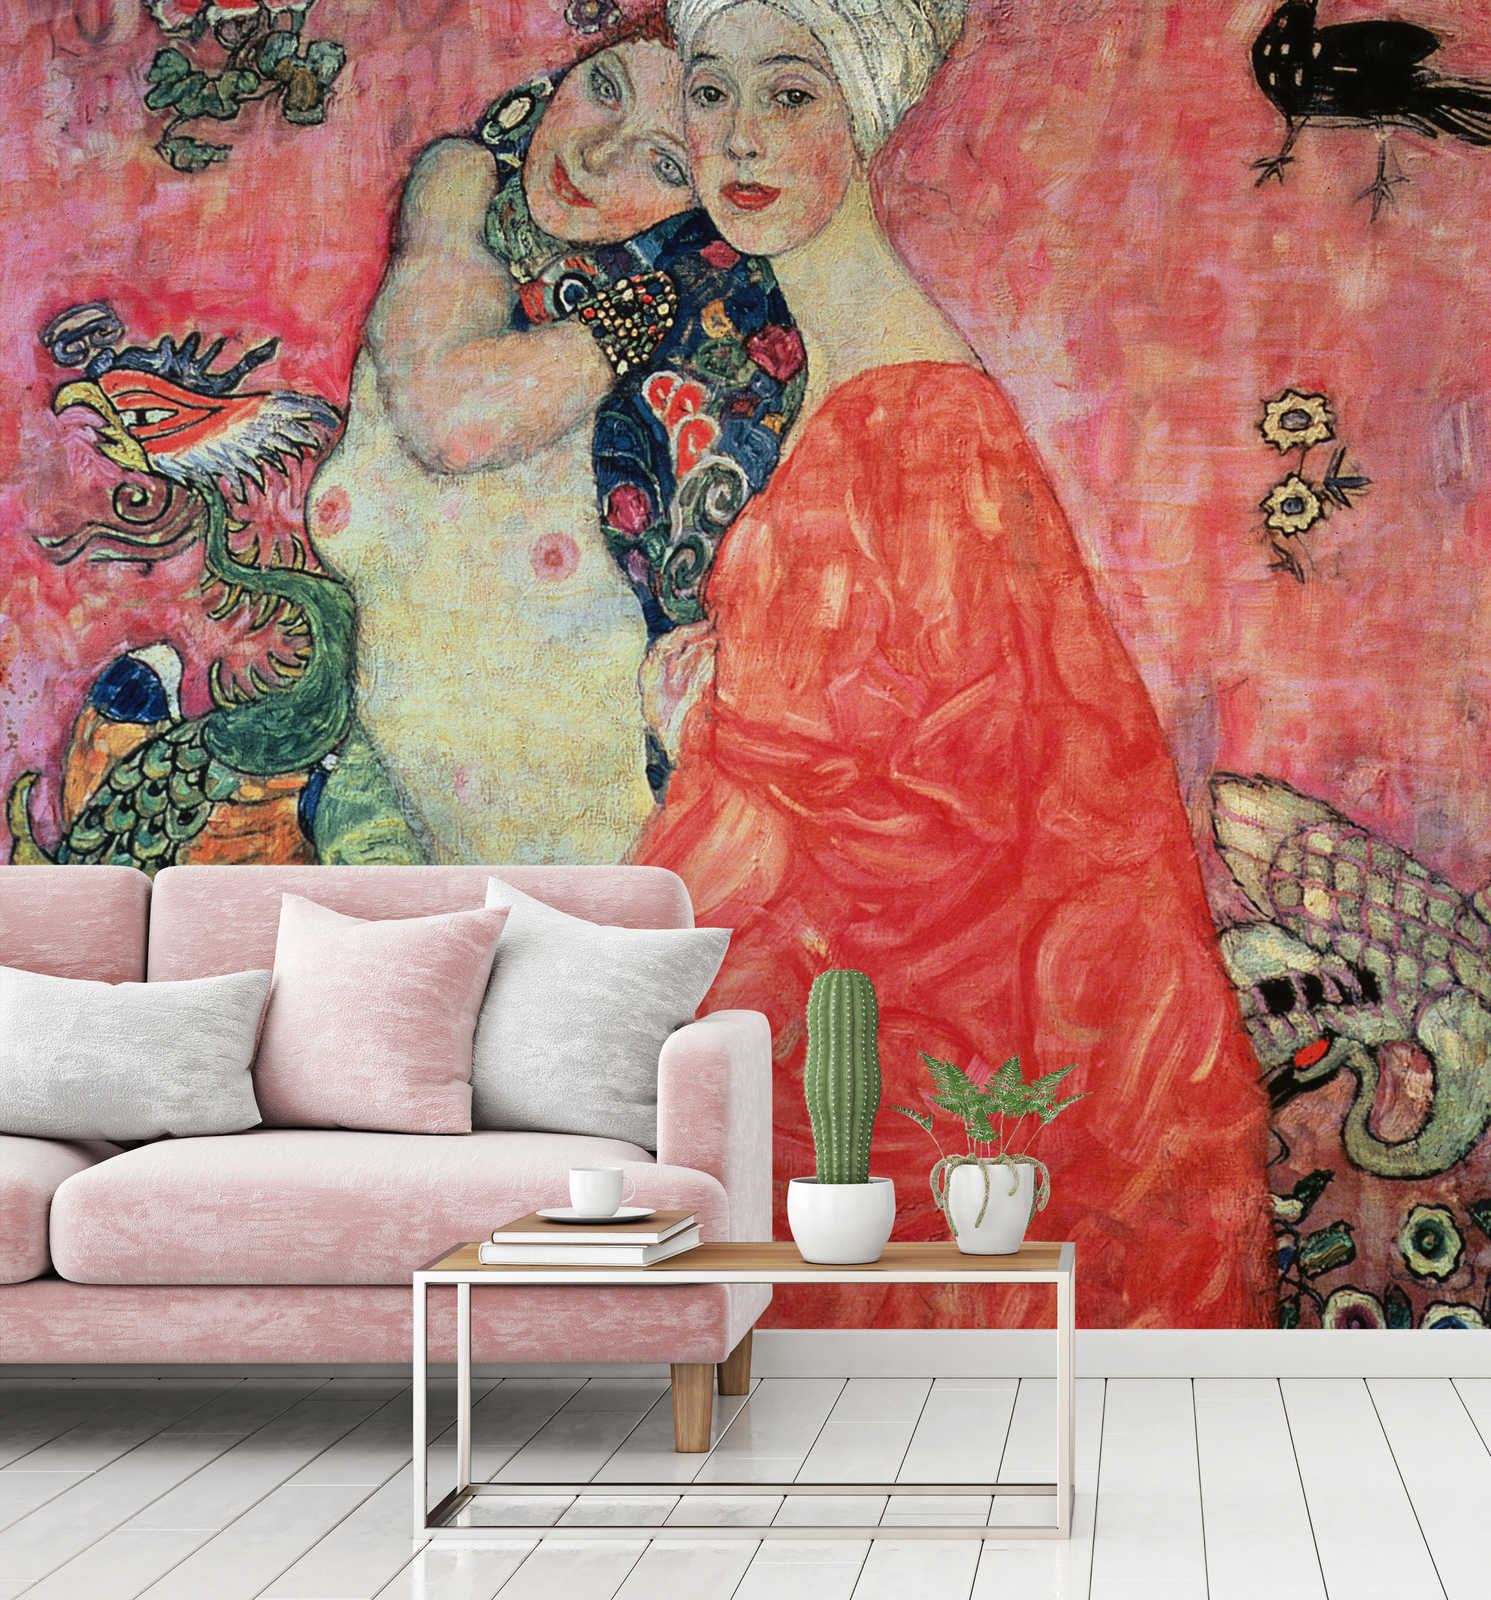             De vriendinnen" muurschildering van Gustav Klimt
        